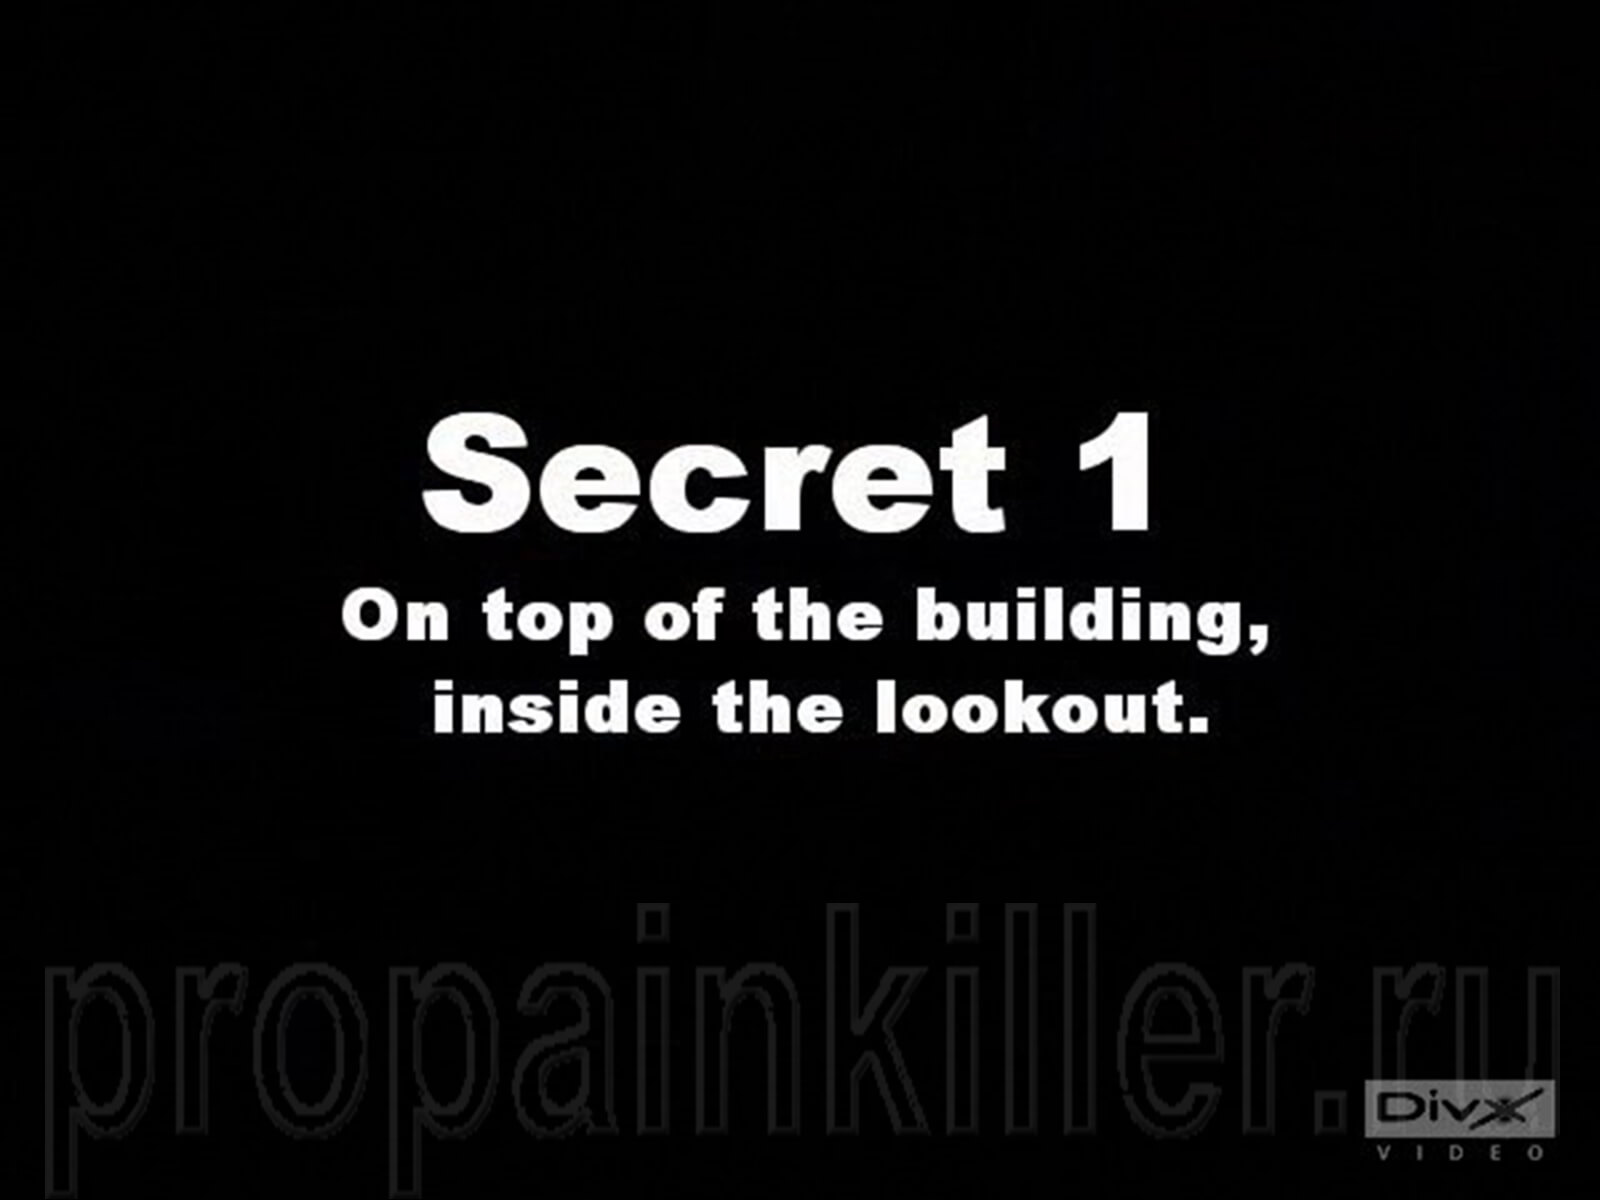 Скриншоты поиска секретов. Painkiller